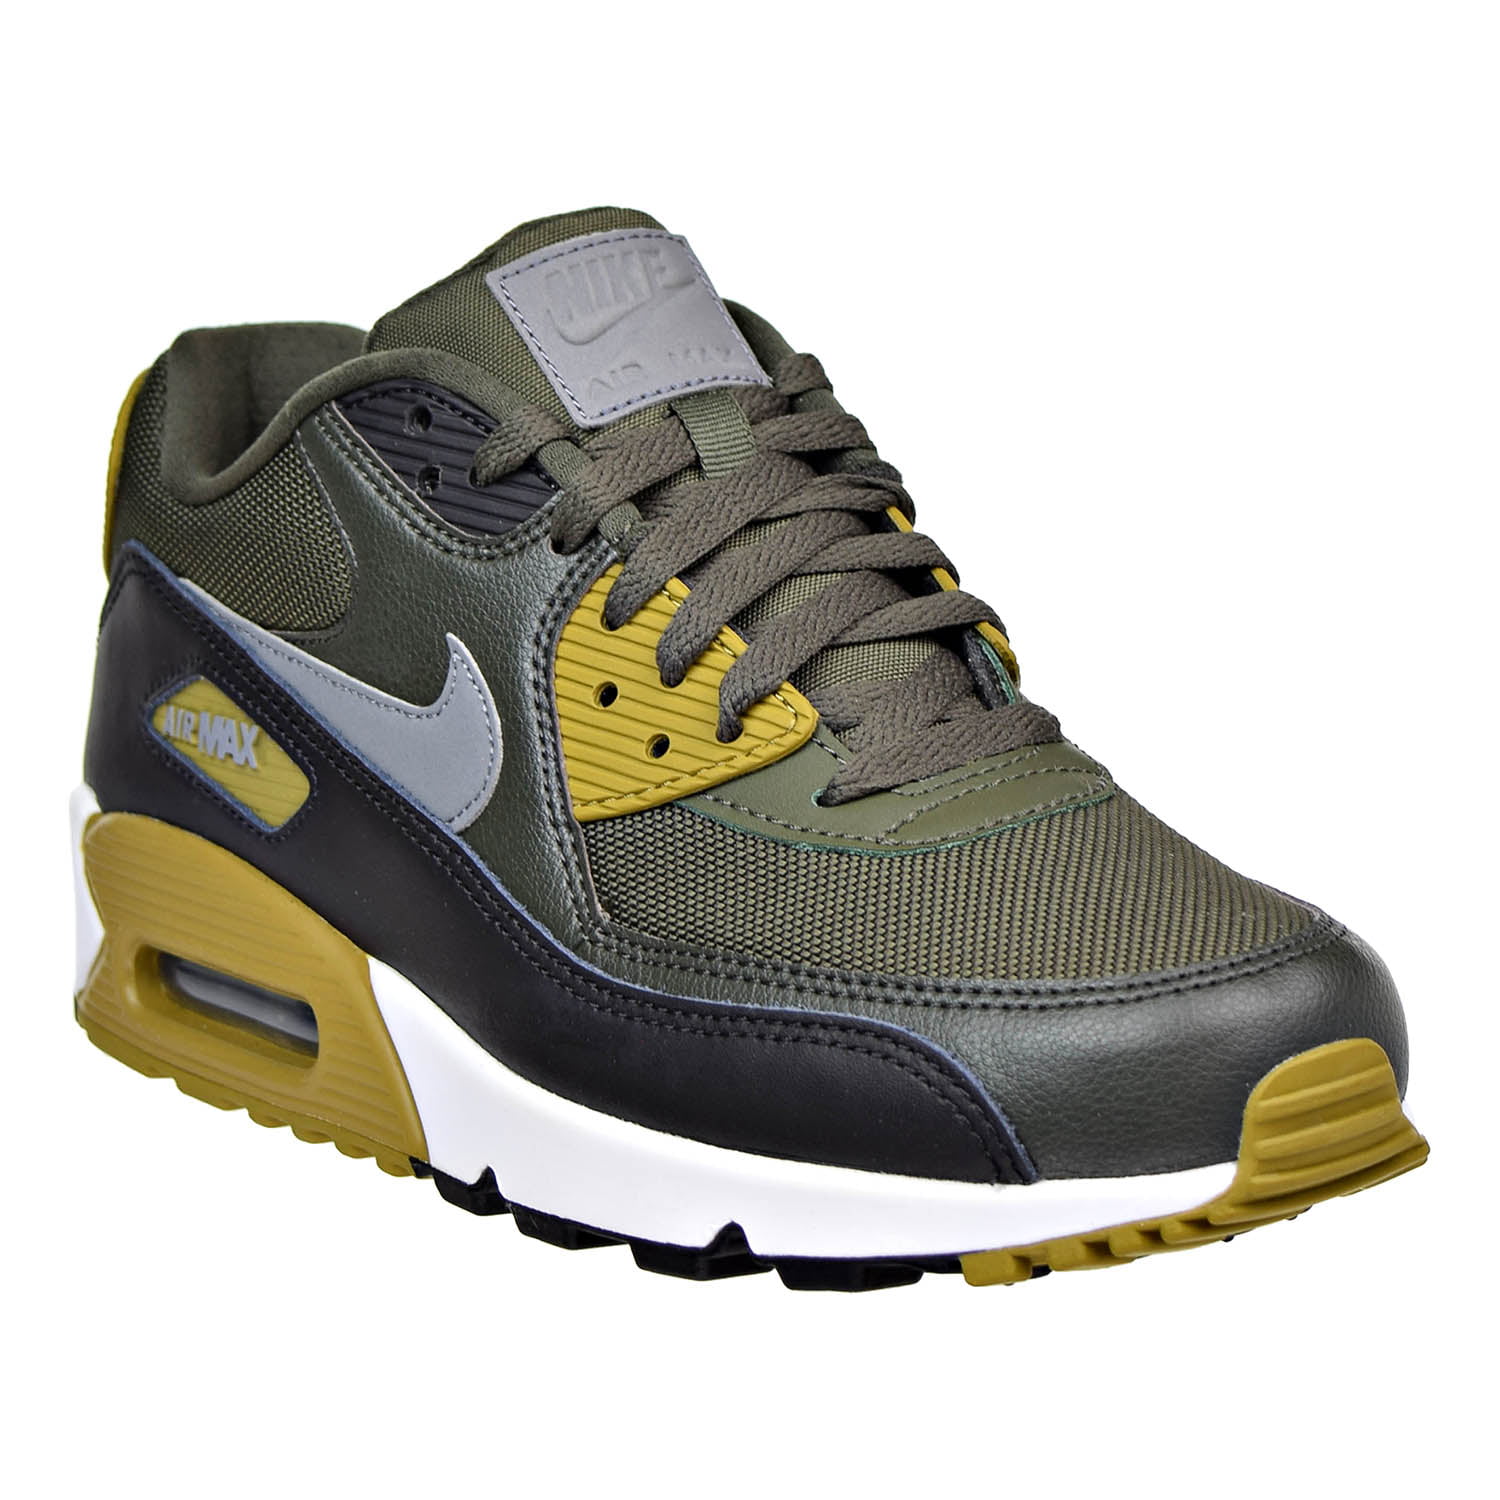 No lo hagas teoría micro Nike Air Max 90 Essential Mens Shoes Cargo Khaki/Cool Grey/Black 537384-307  - Walmart.com